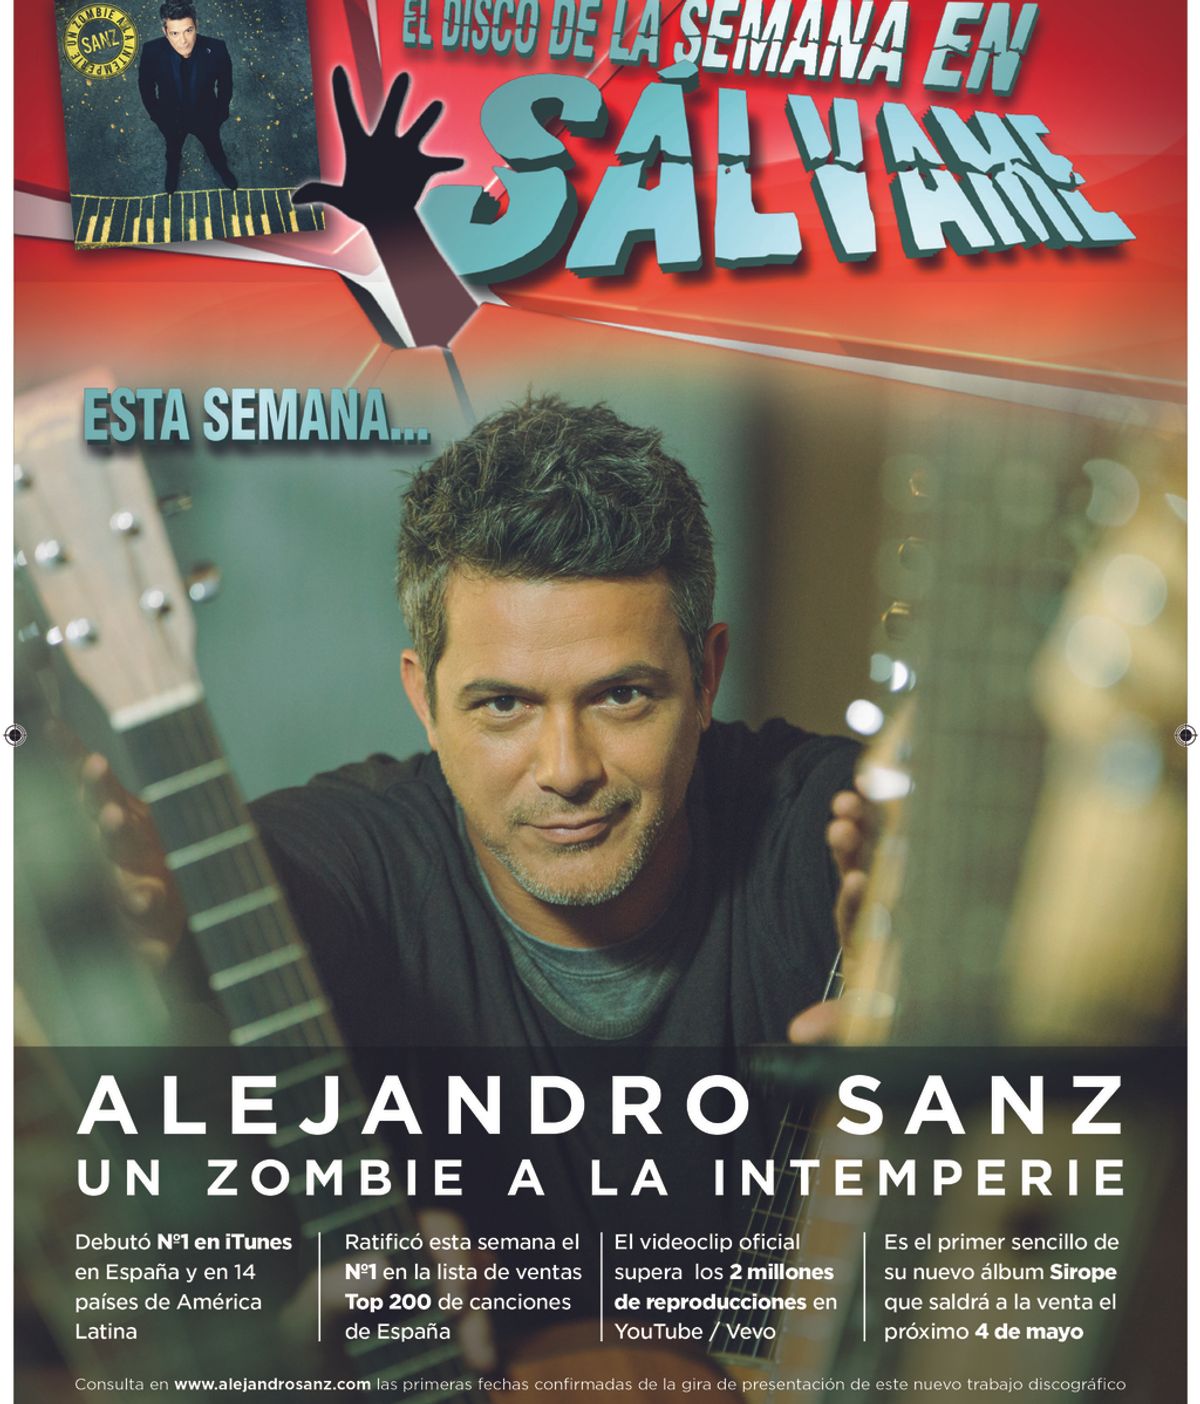 Alejandro Sanz estrena su nuevo single "Un Zombie a la Intemperie"